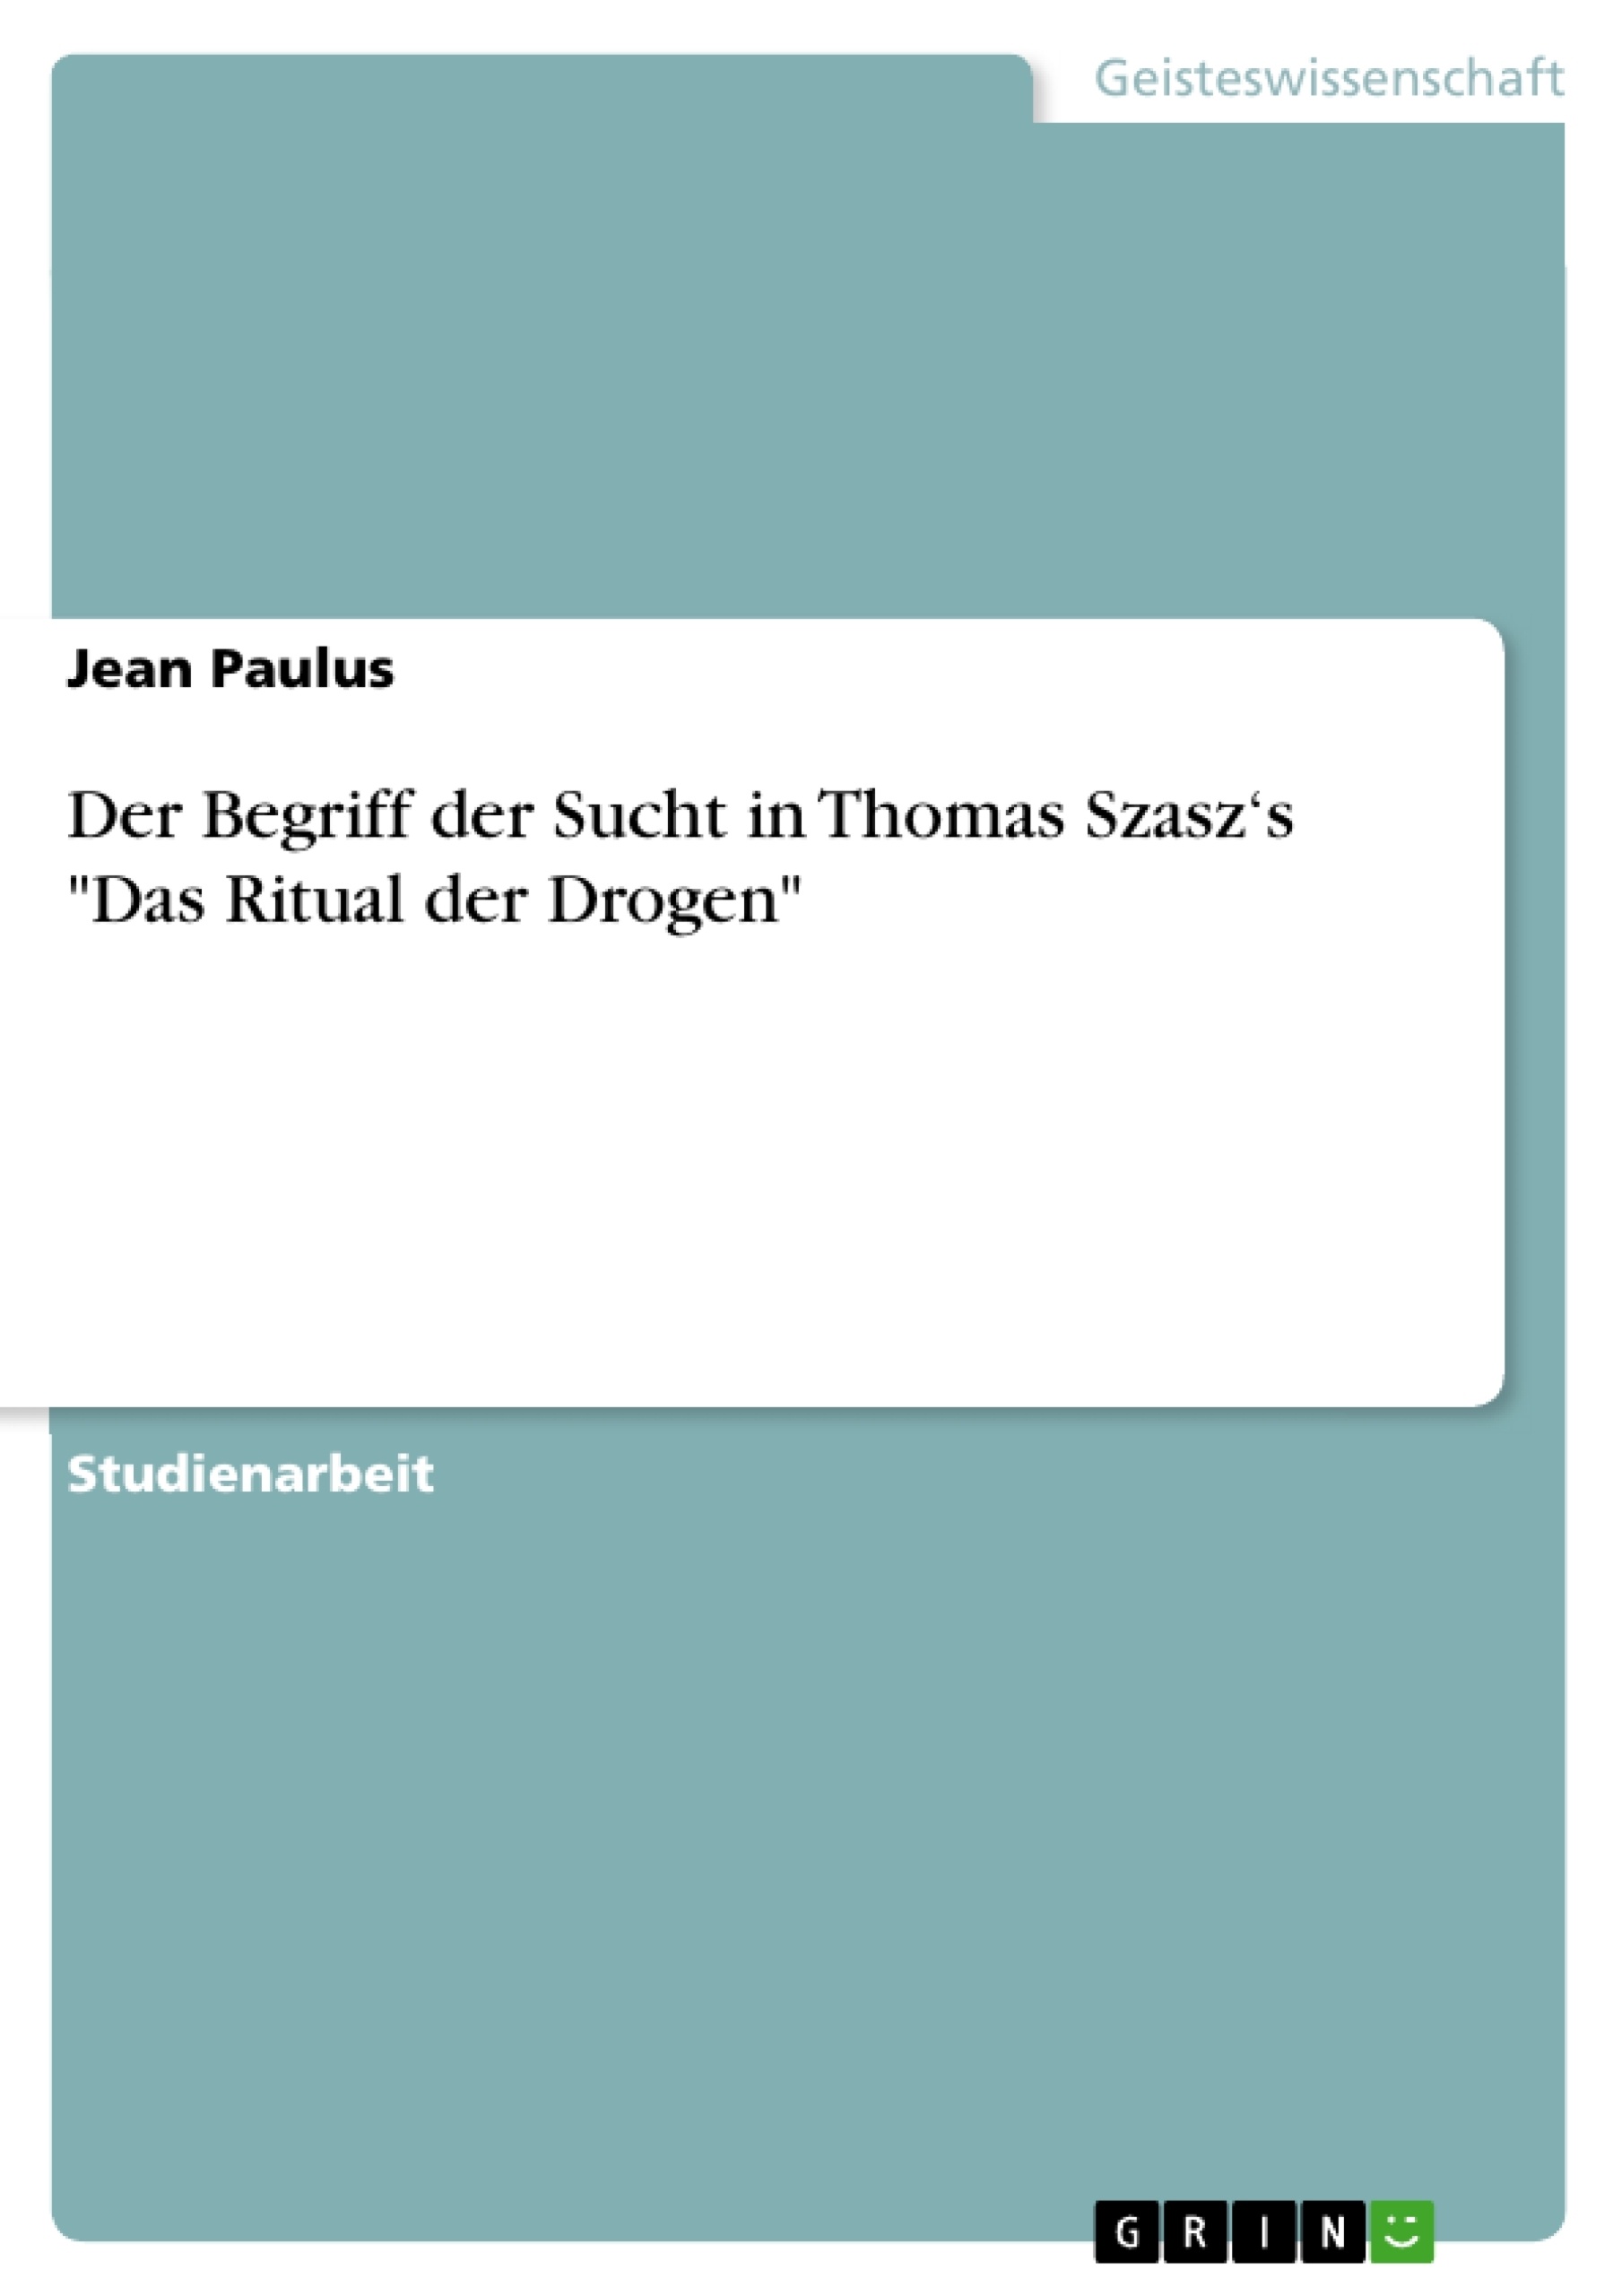 Titre: Der Begriff der Sucht in Thomas Szasz‘s "Das Ritual der Drogen"